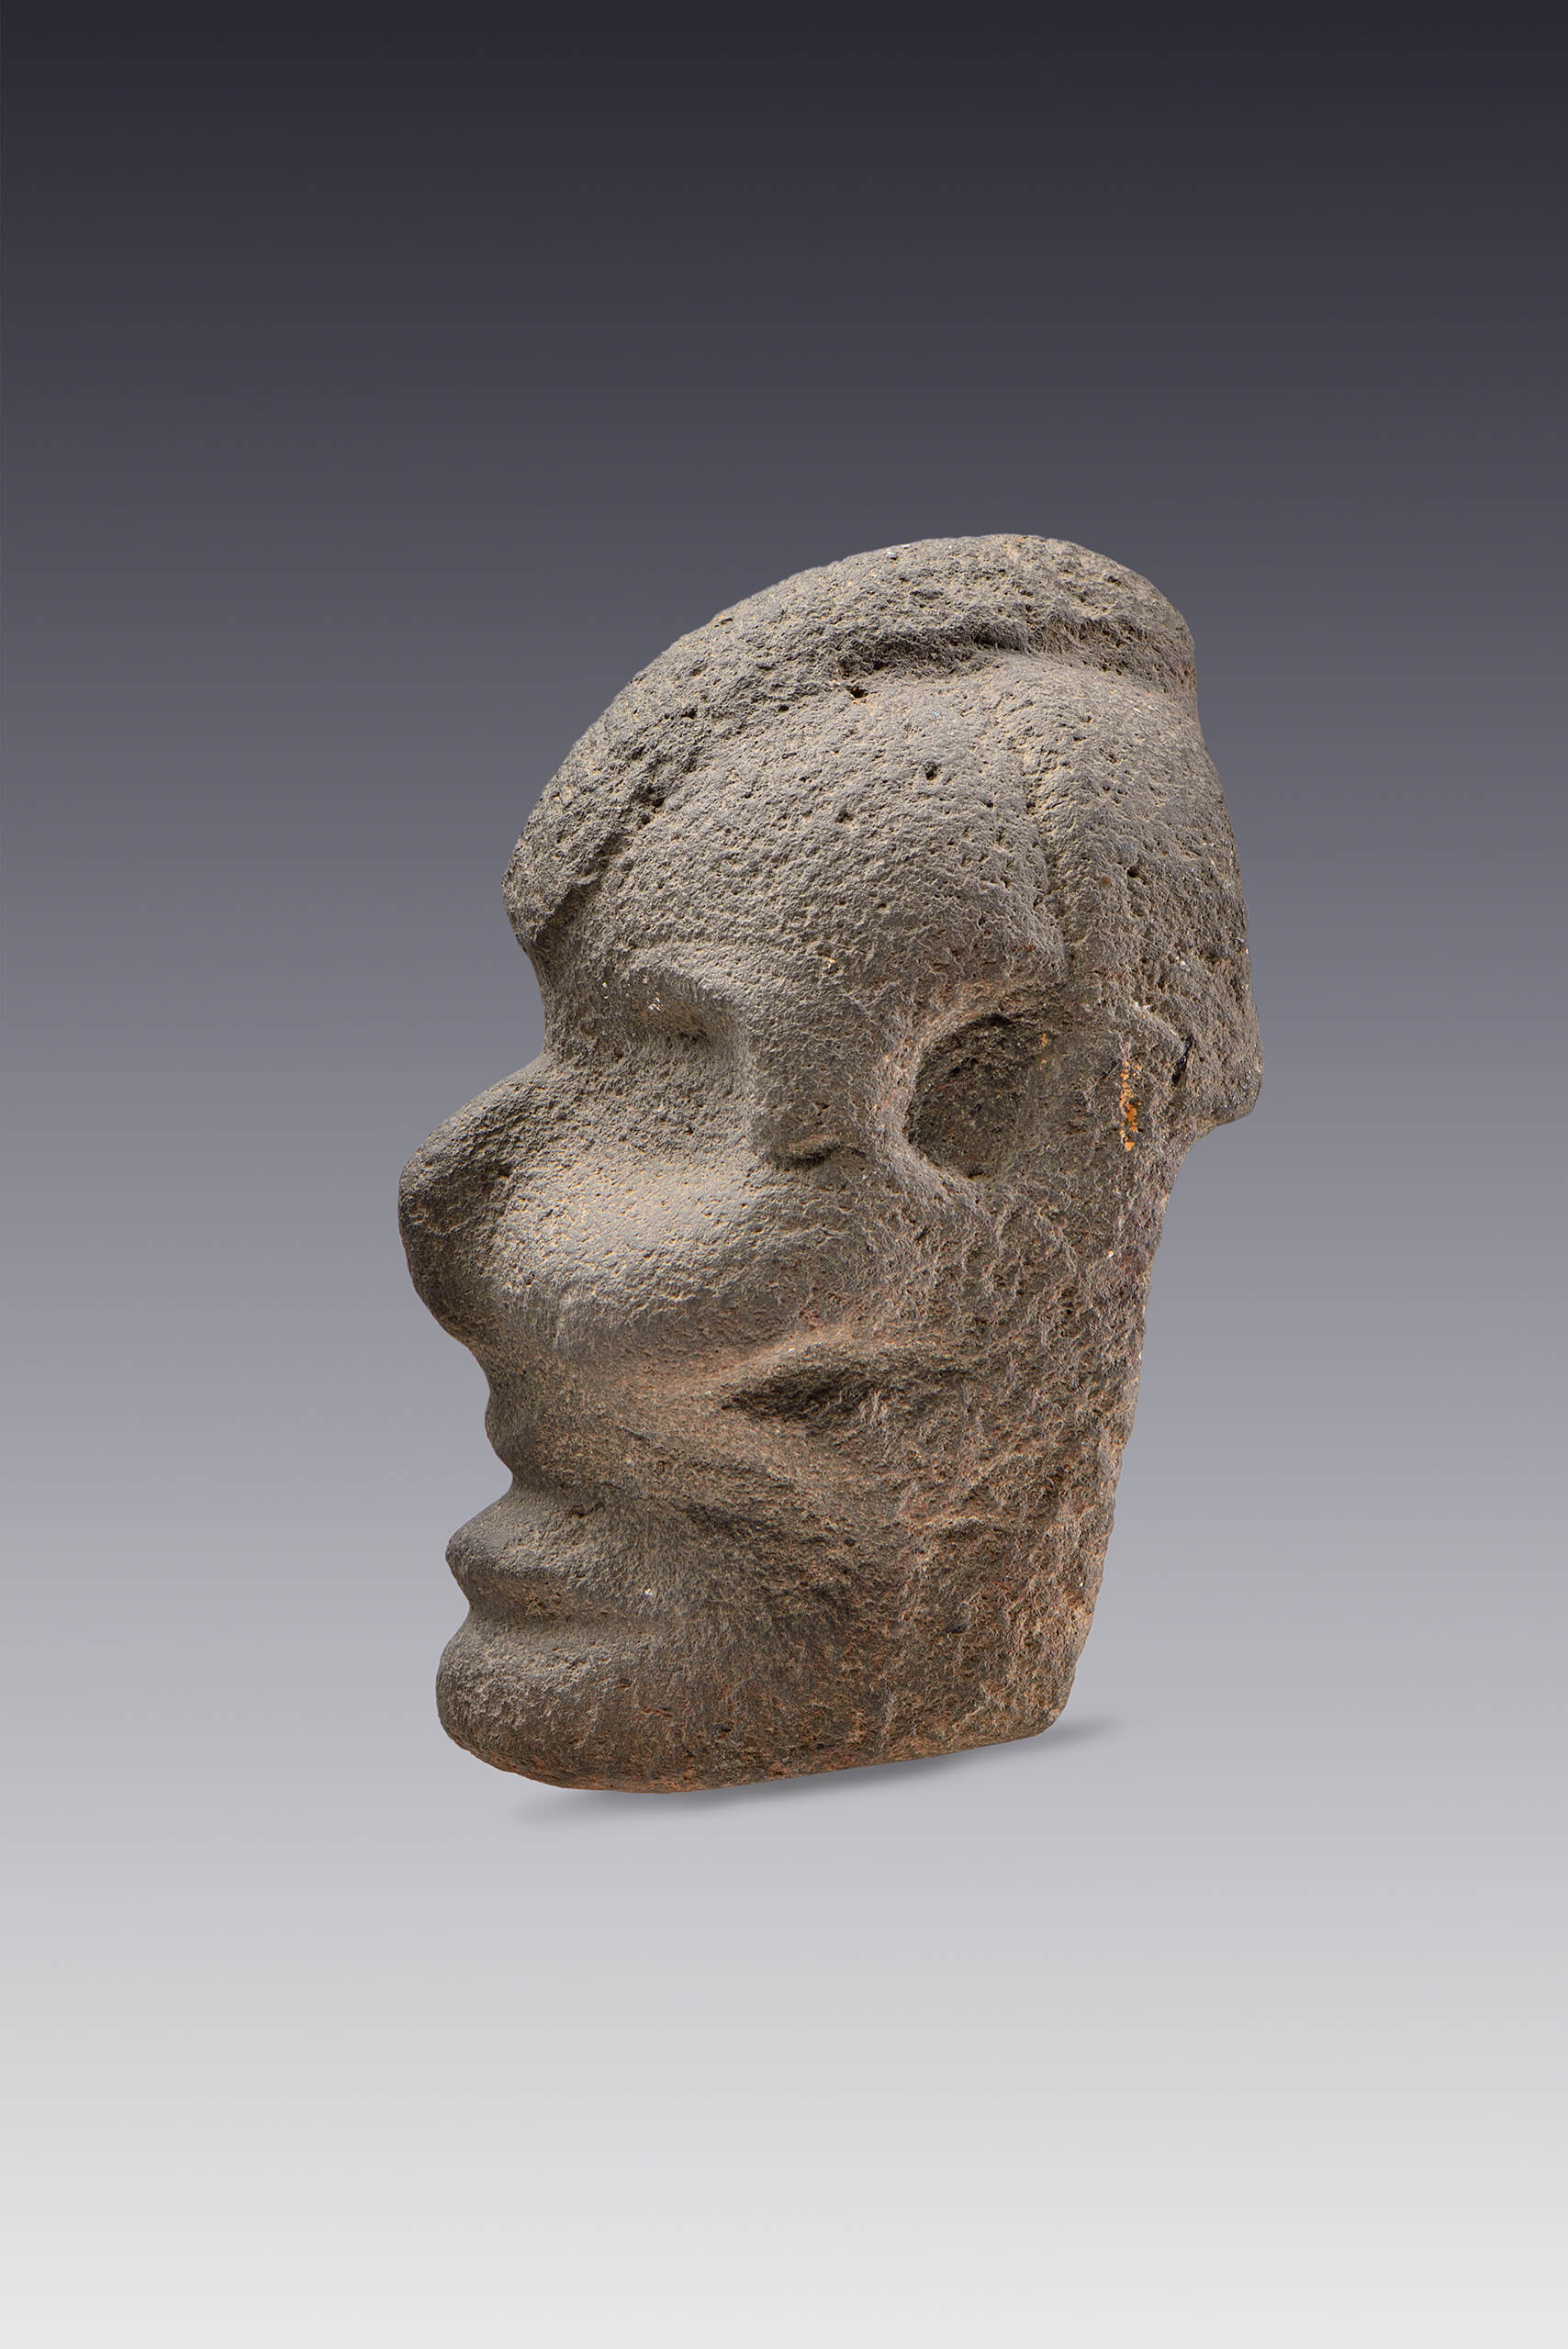 Hacha votiva en forma de cabeza humana descarnada | El tiempo en las cosas II. Salas de Arte Contemporáneo | Museo Amparo, Puebla